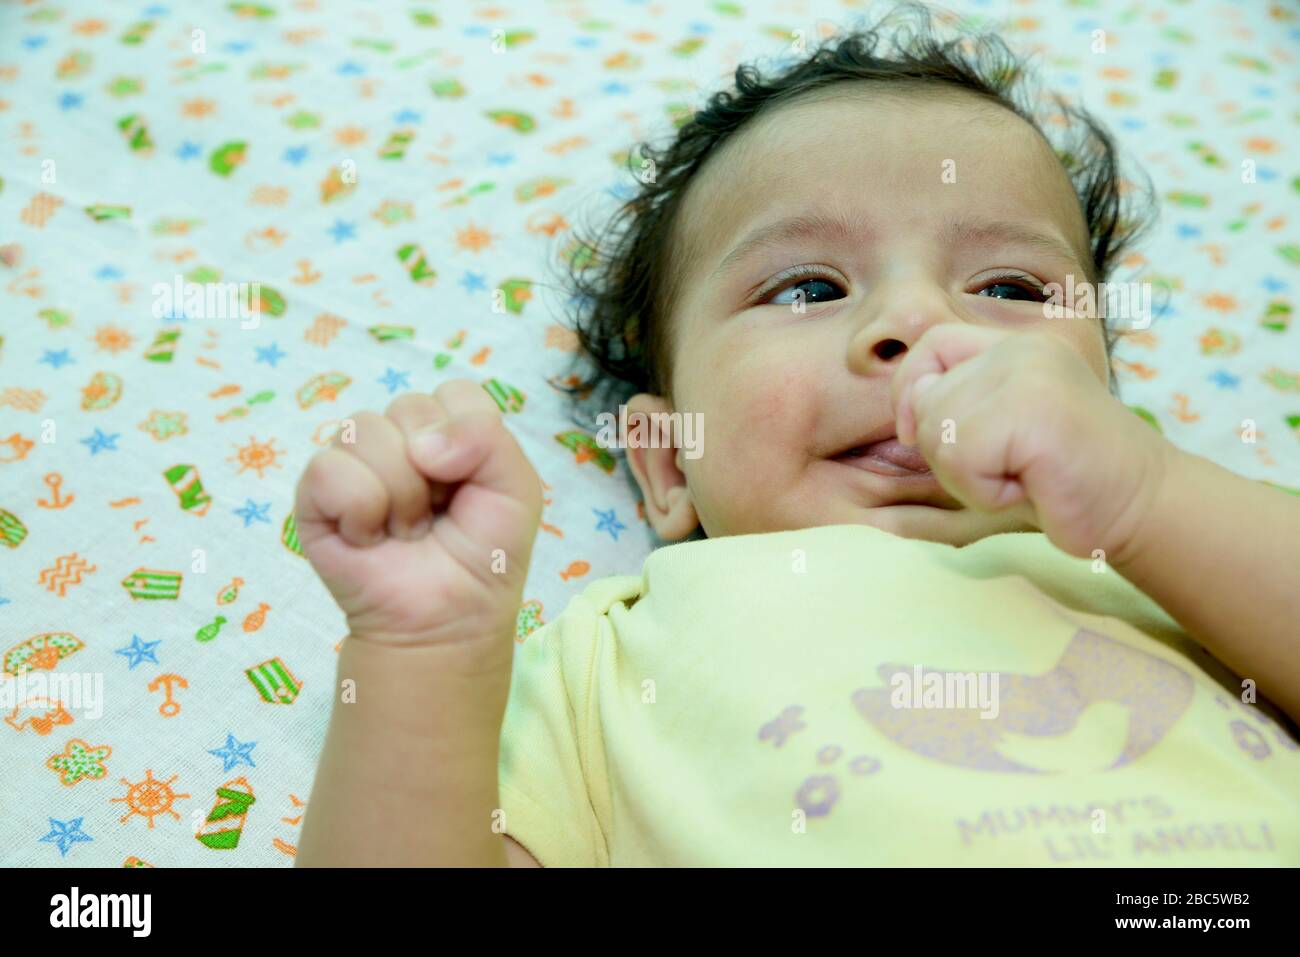 Bébé nouveau-né jouant sur le lit Banque D'Images